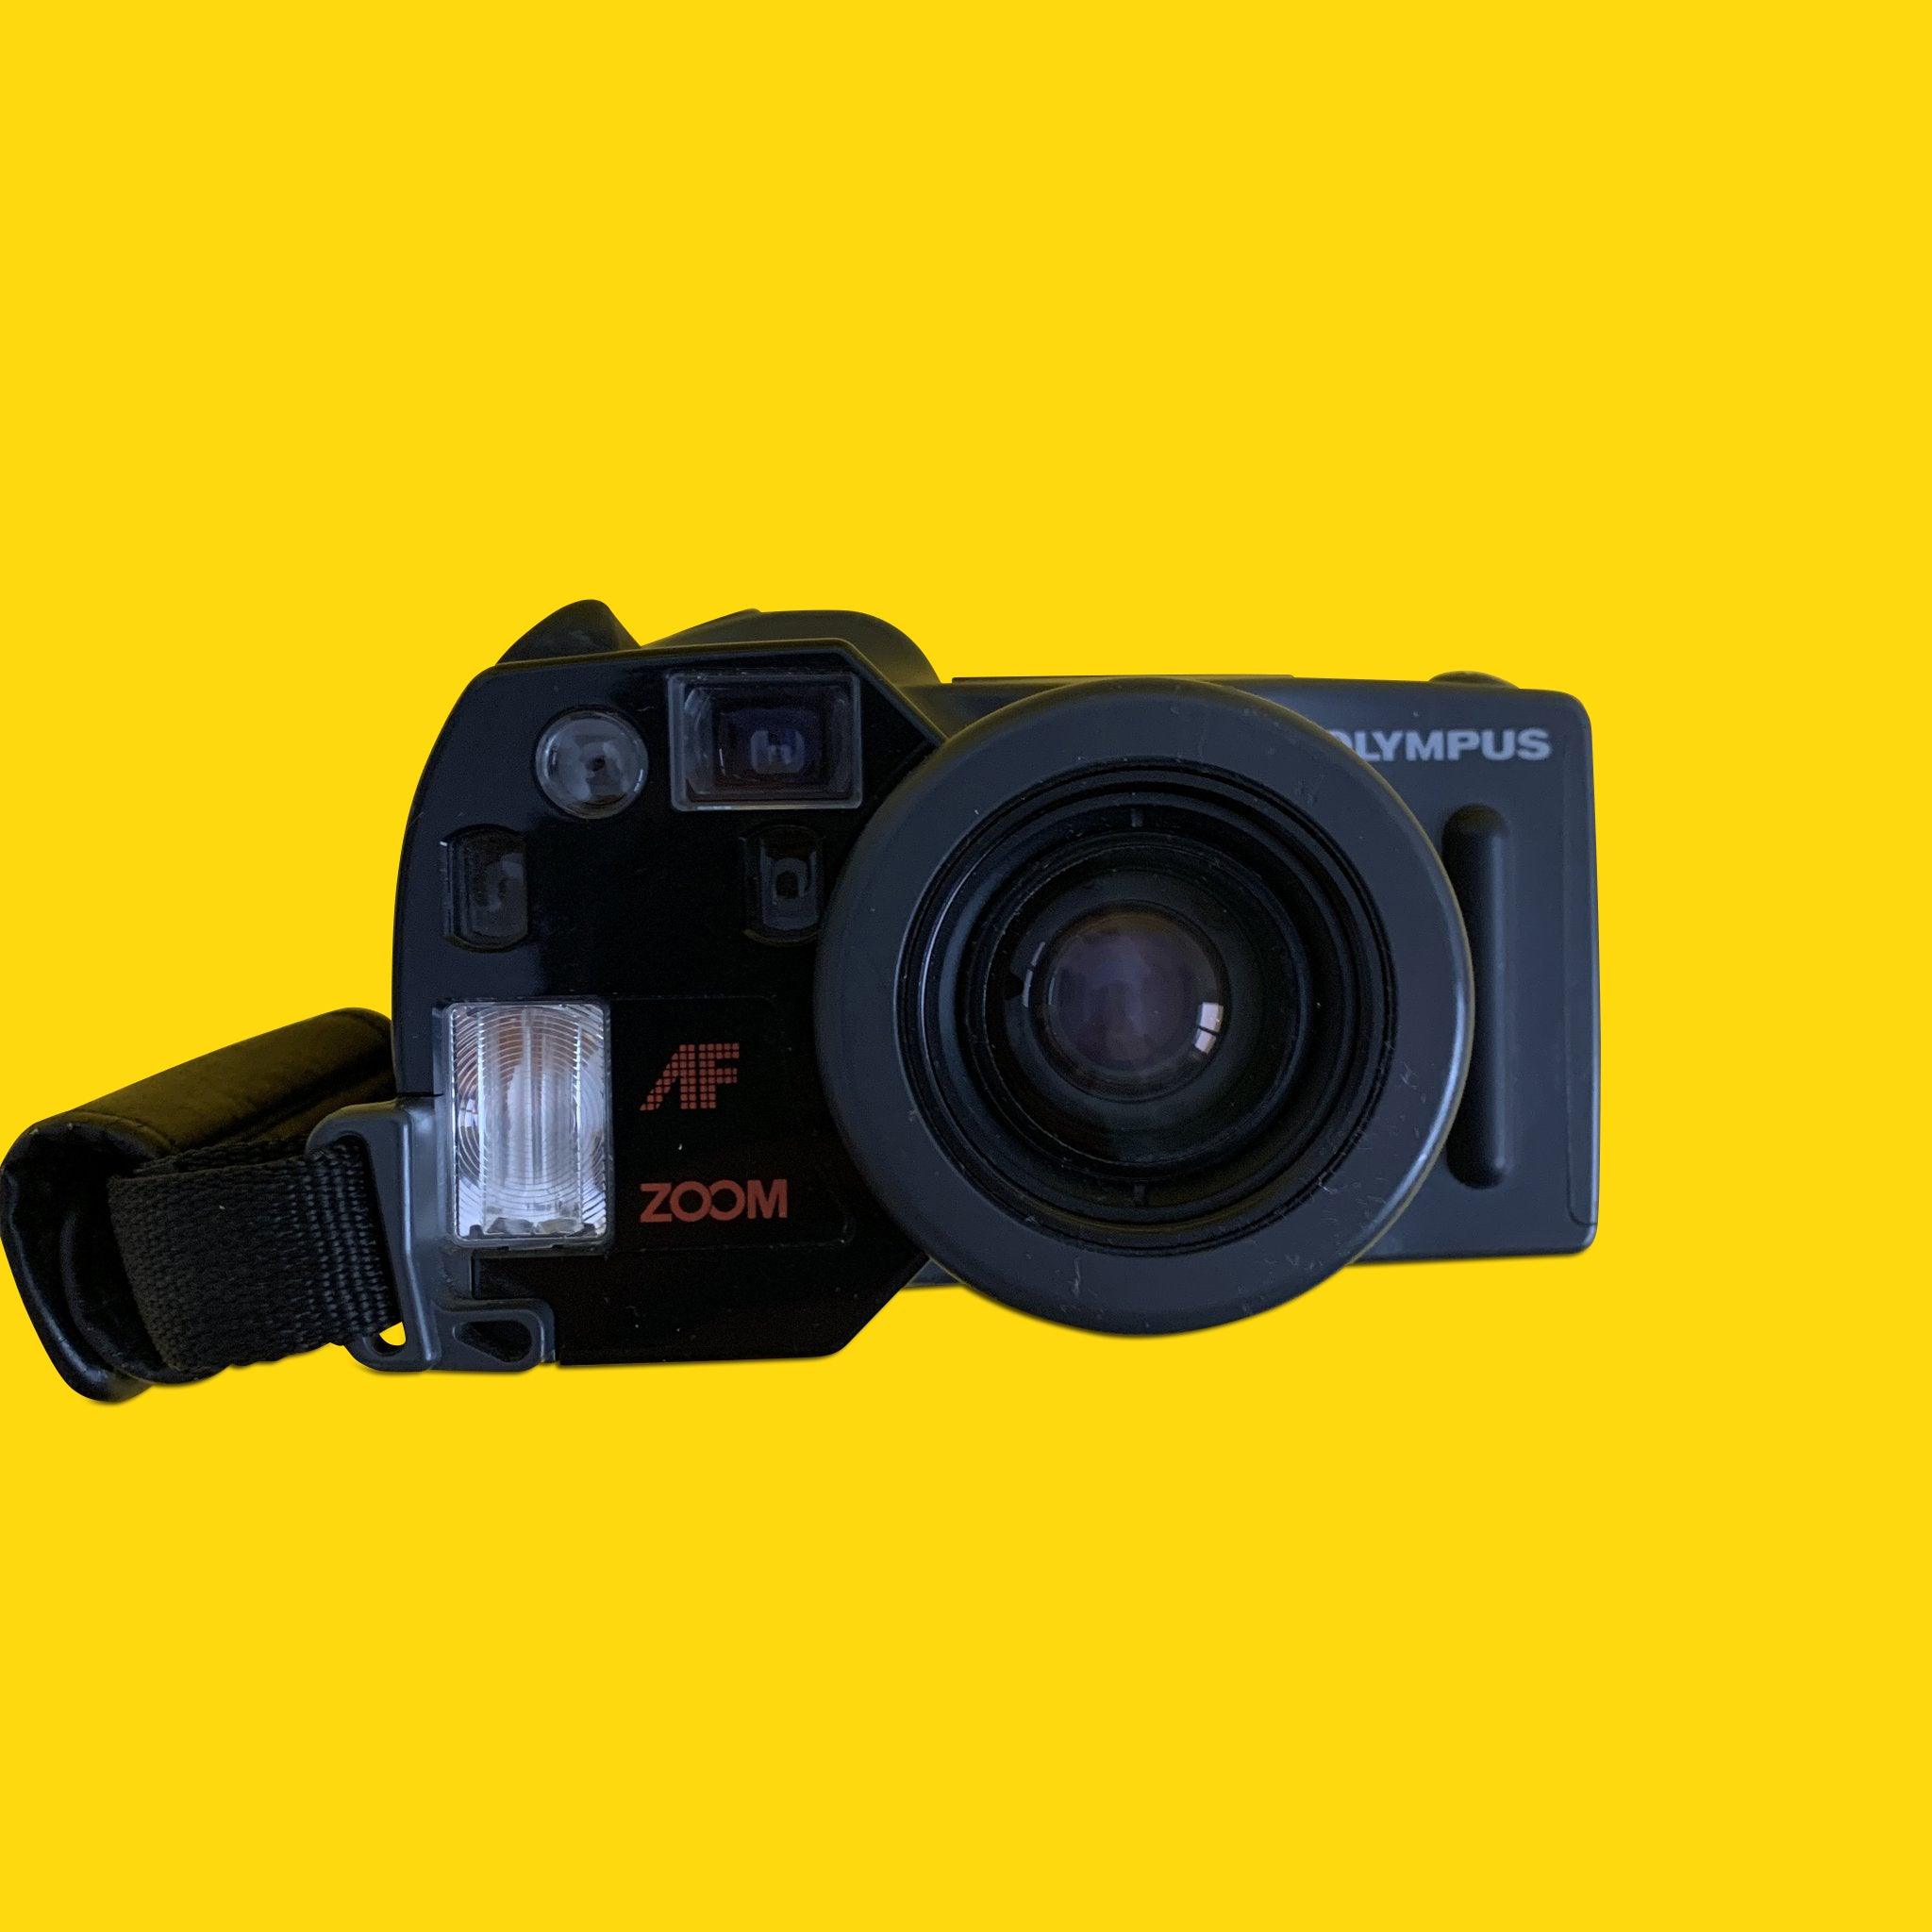 オリンパス スーパーズーム AZ-300 35mm フィルム カメラ ポイント アンド シュート